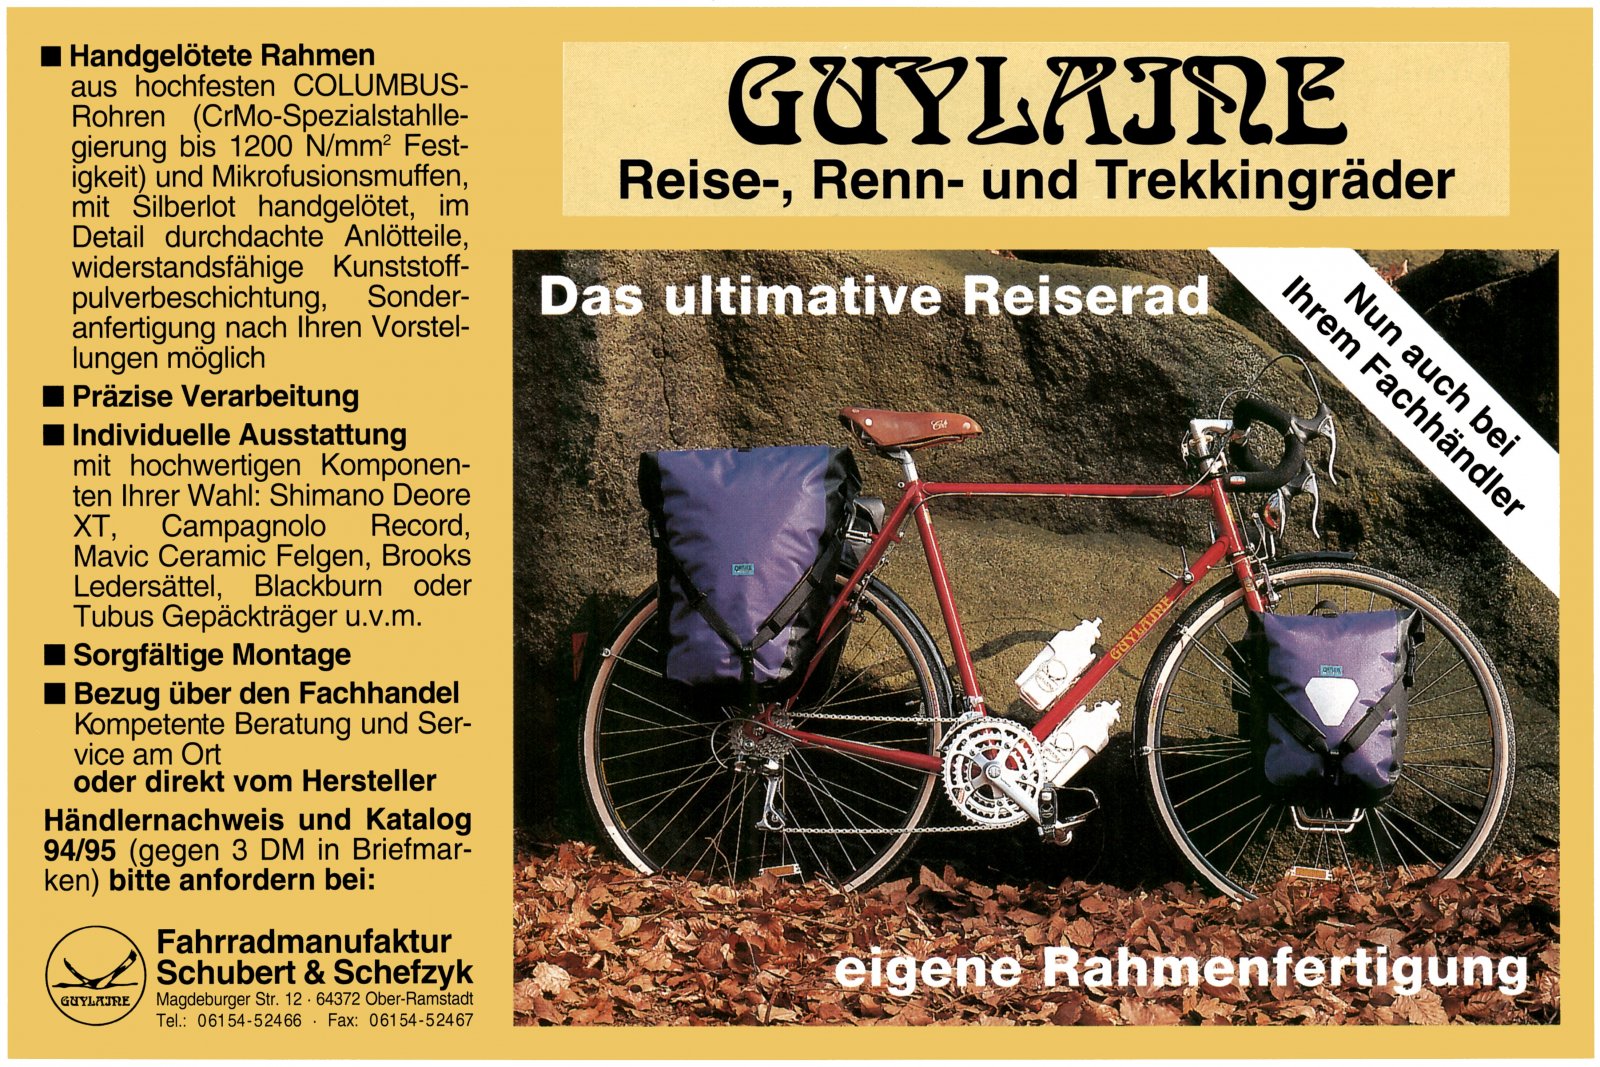 Inserat Guylaine 1993 und 1994.jpg